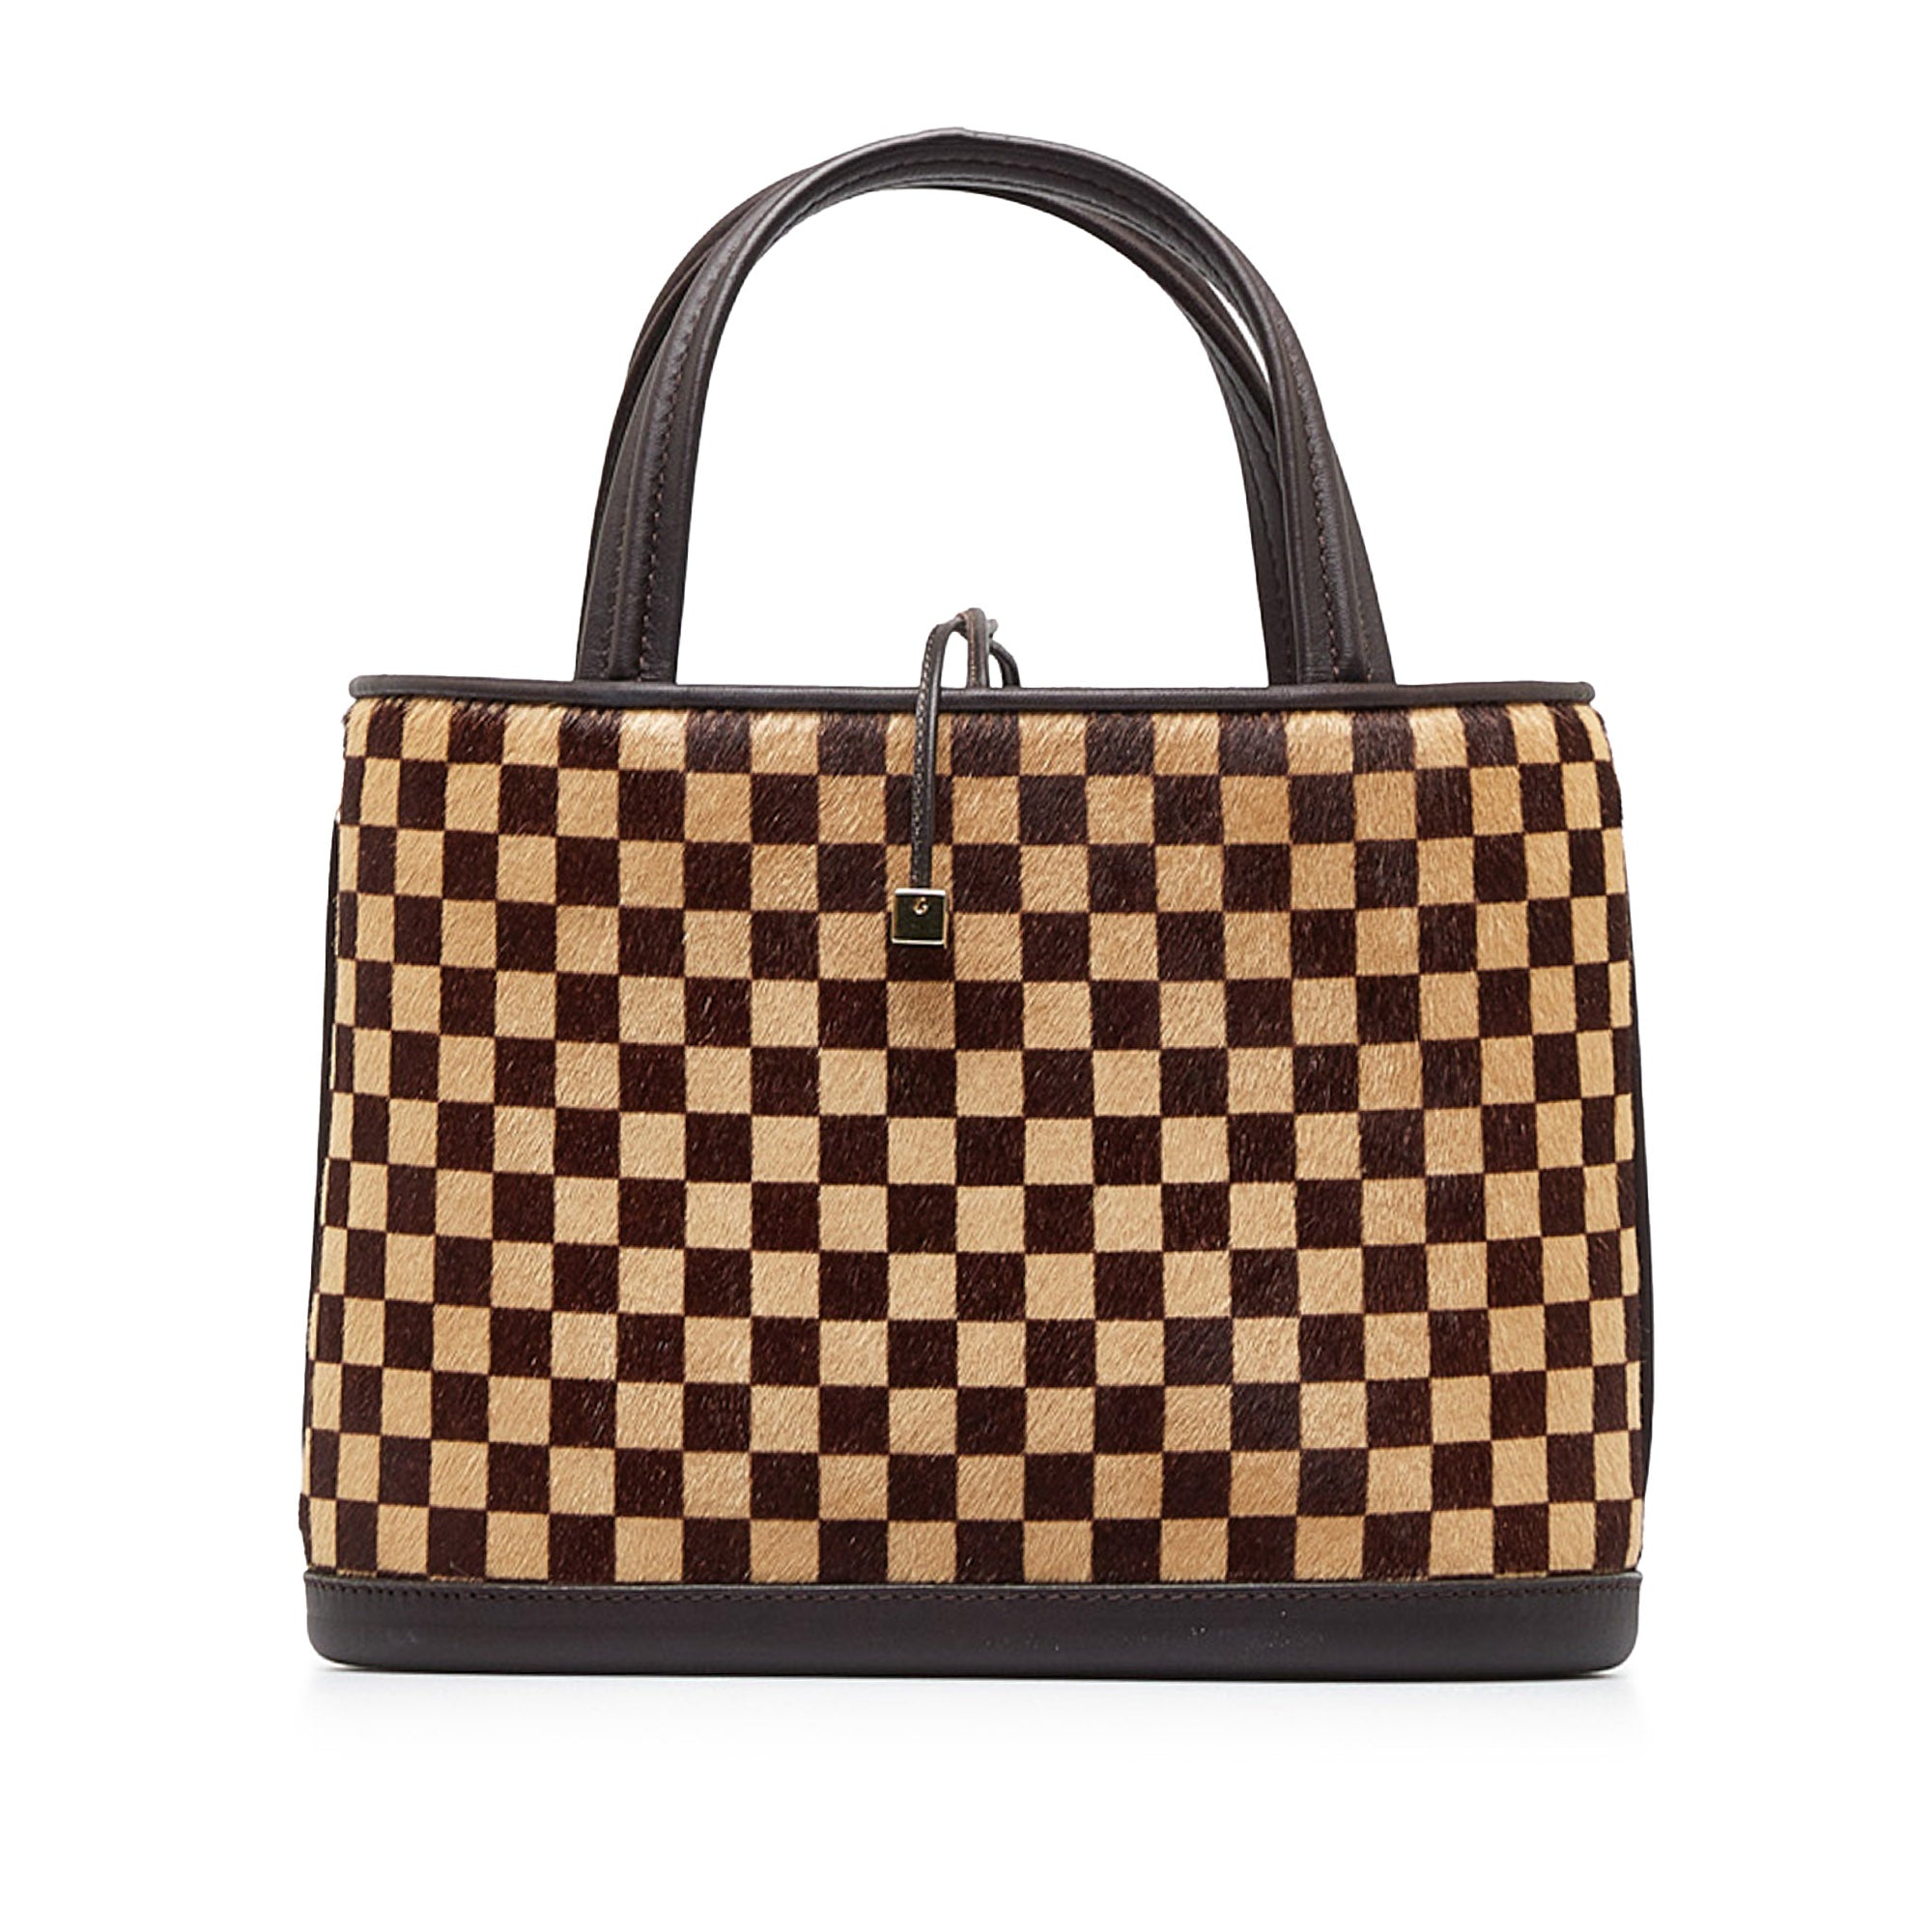 Louis Vuitton Impala Handbag